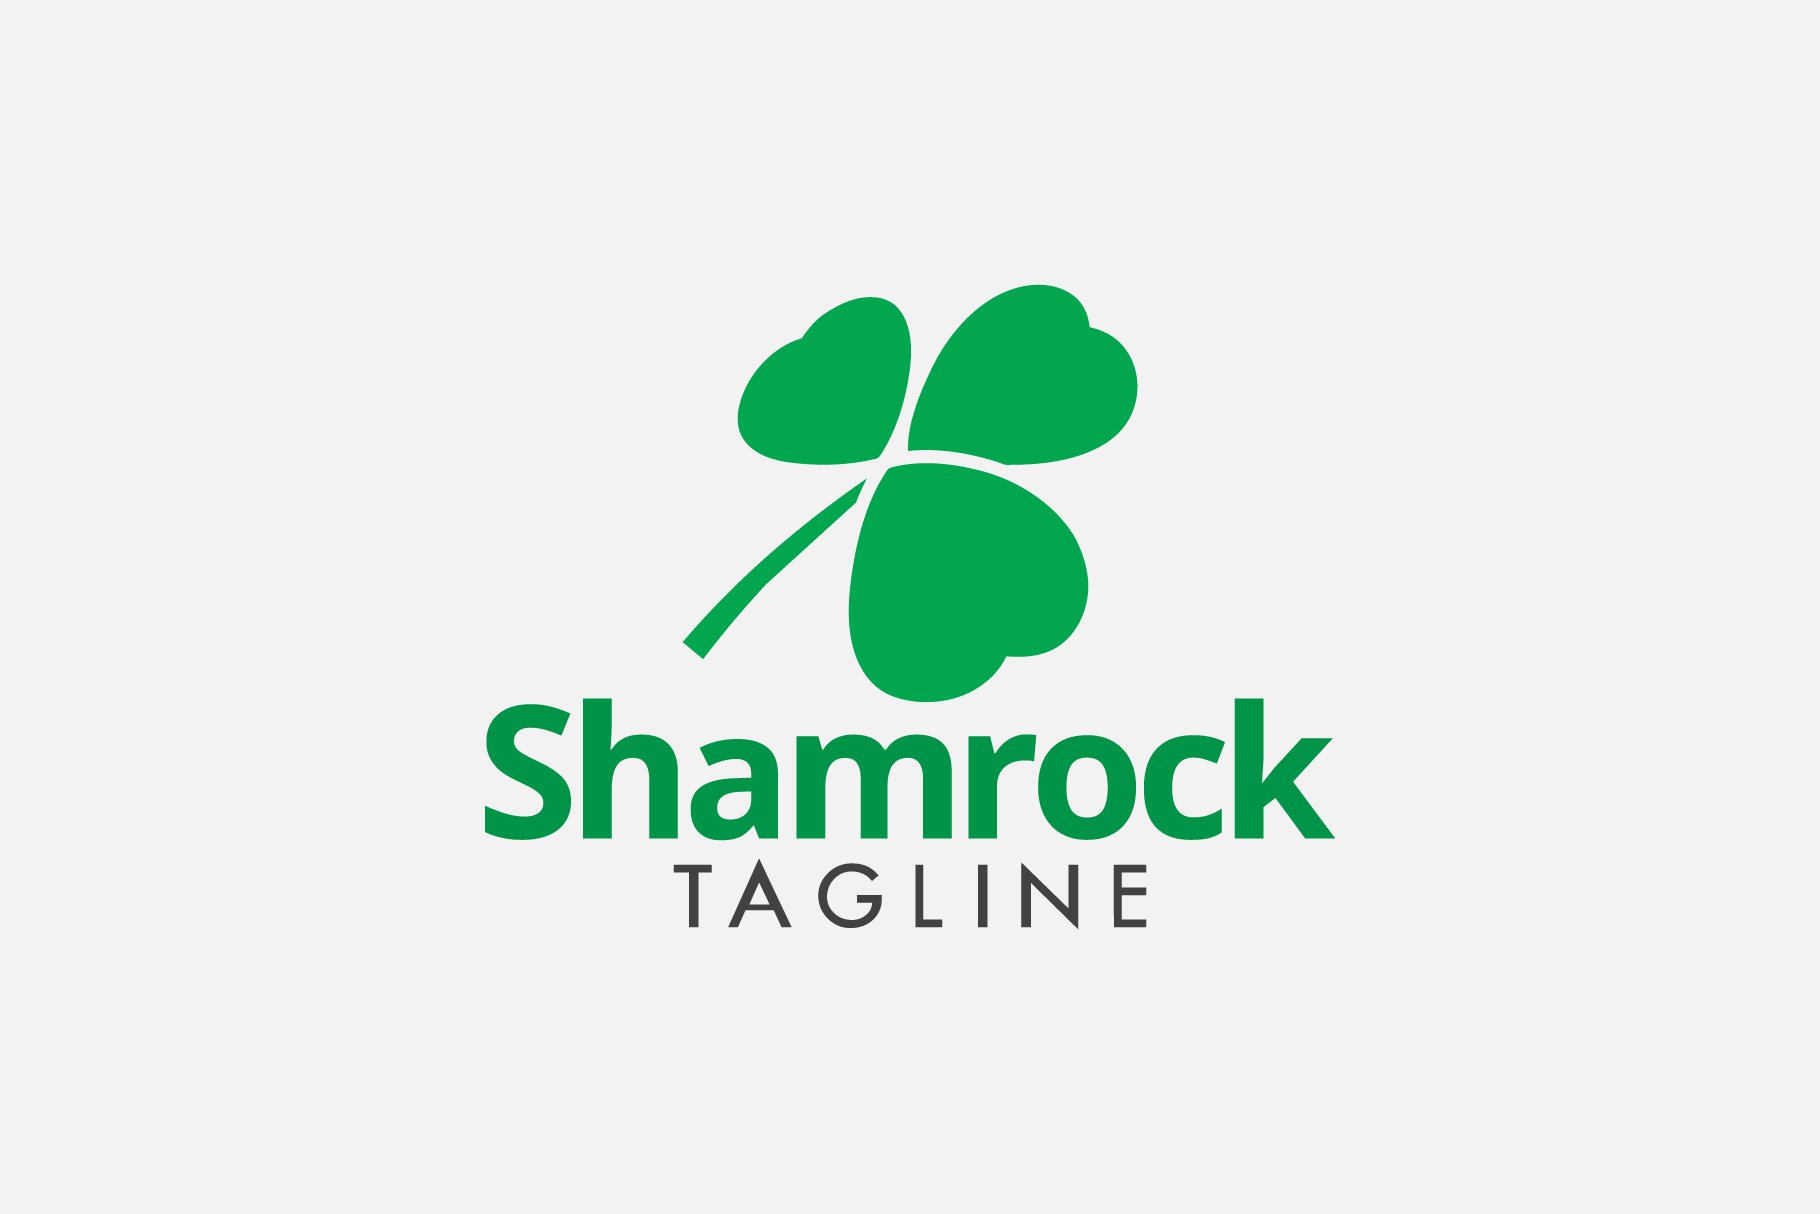 Shamrock leaf logo template cover image.